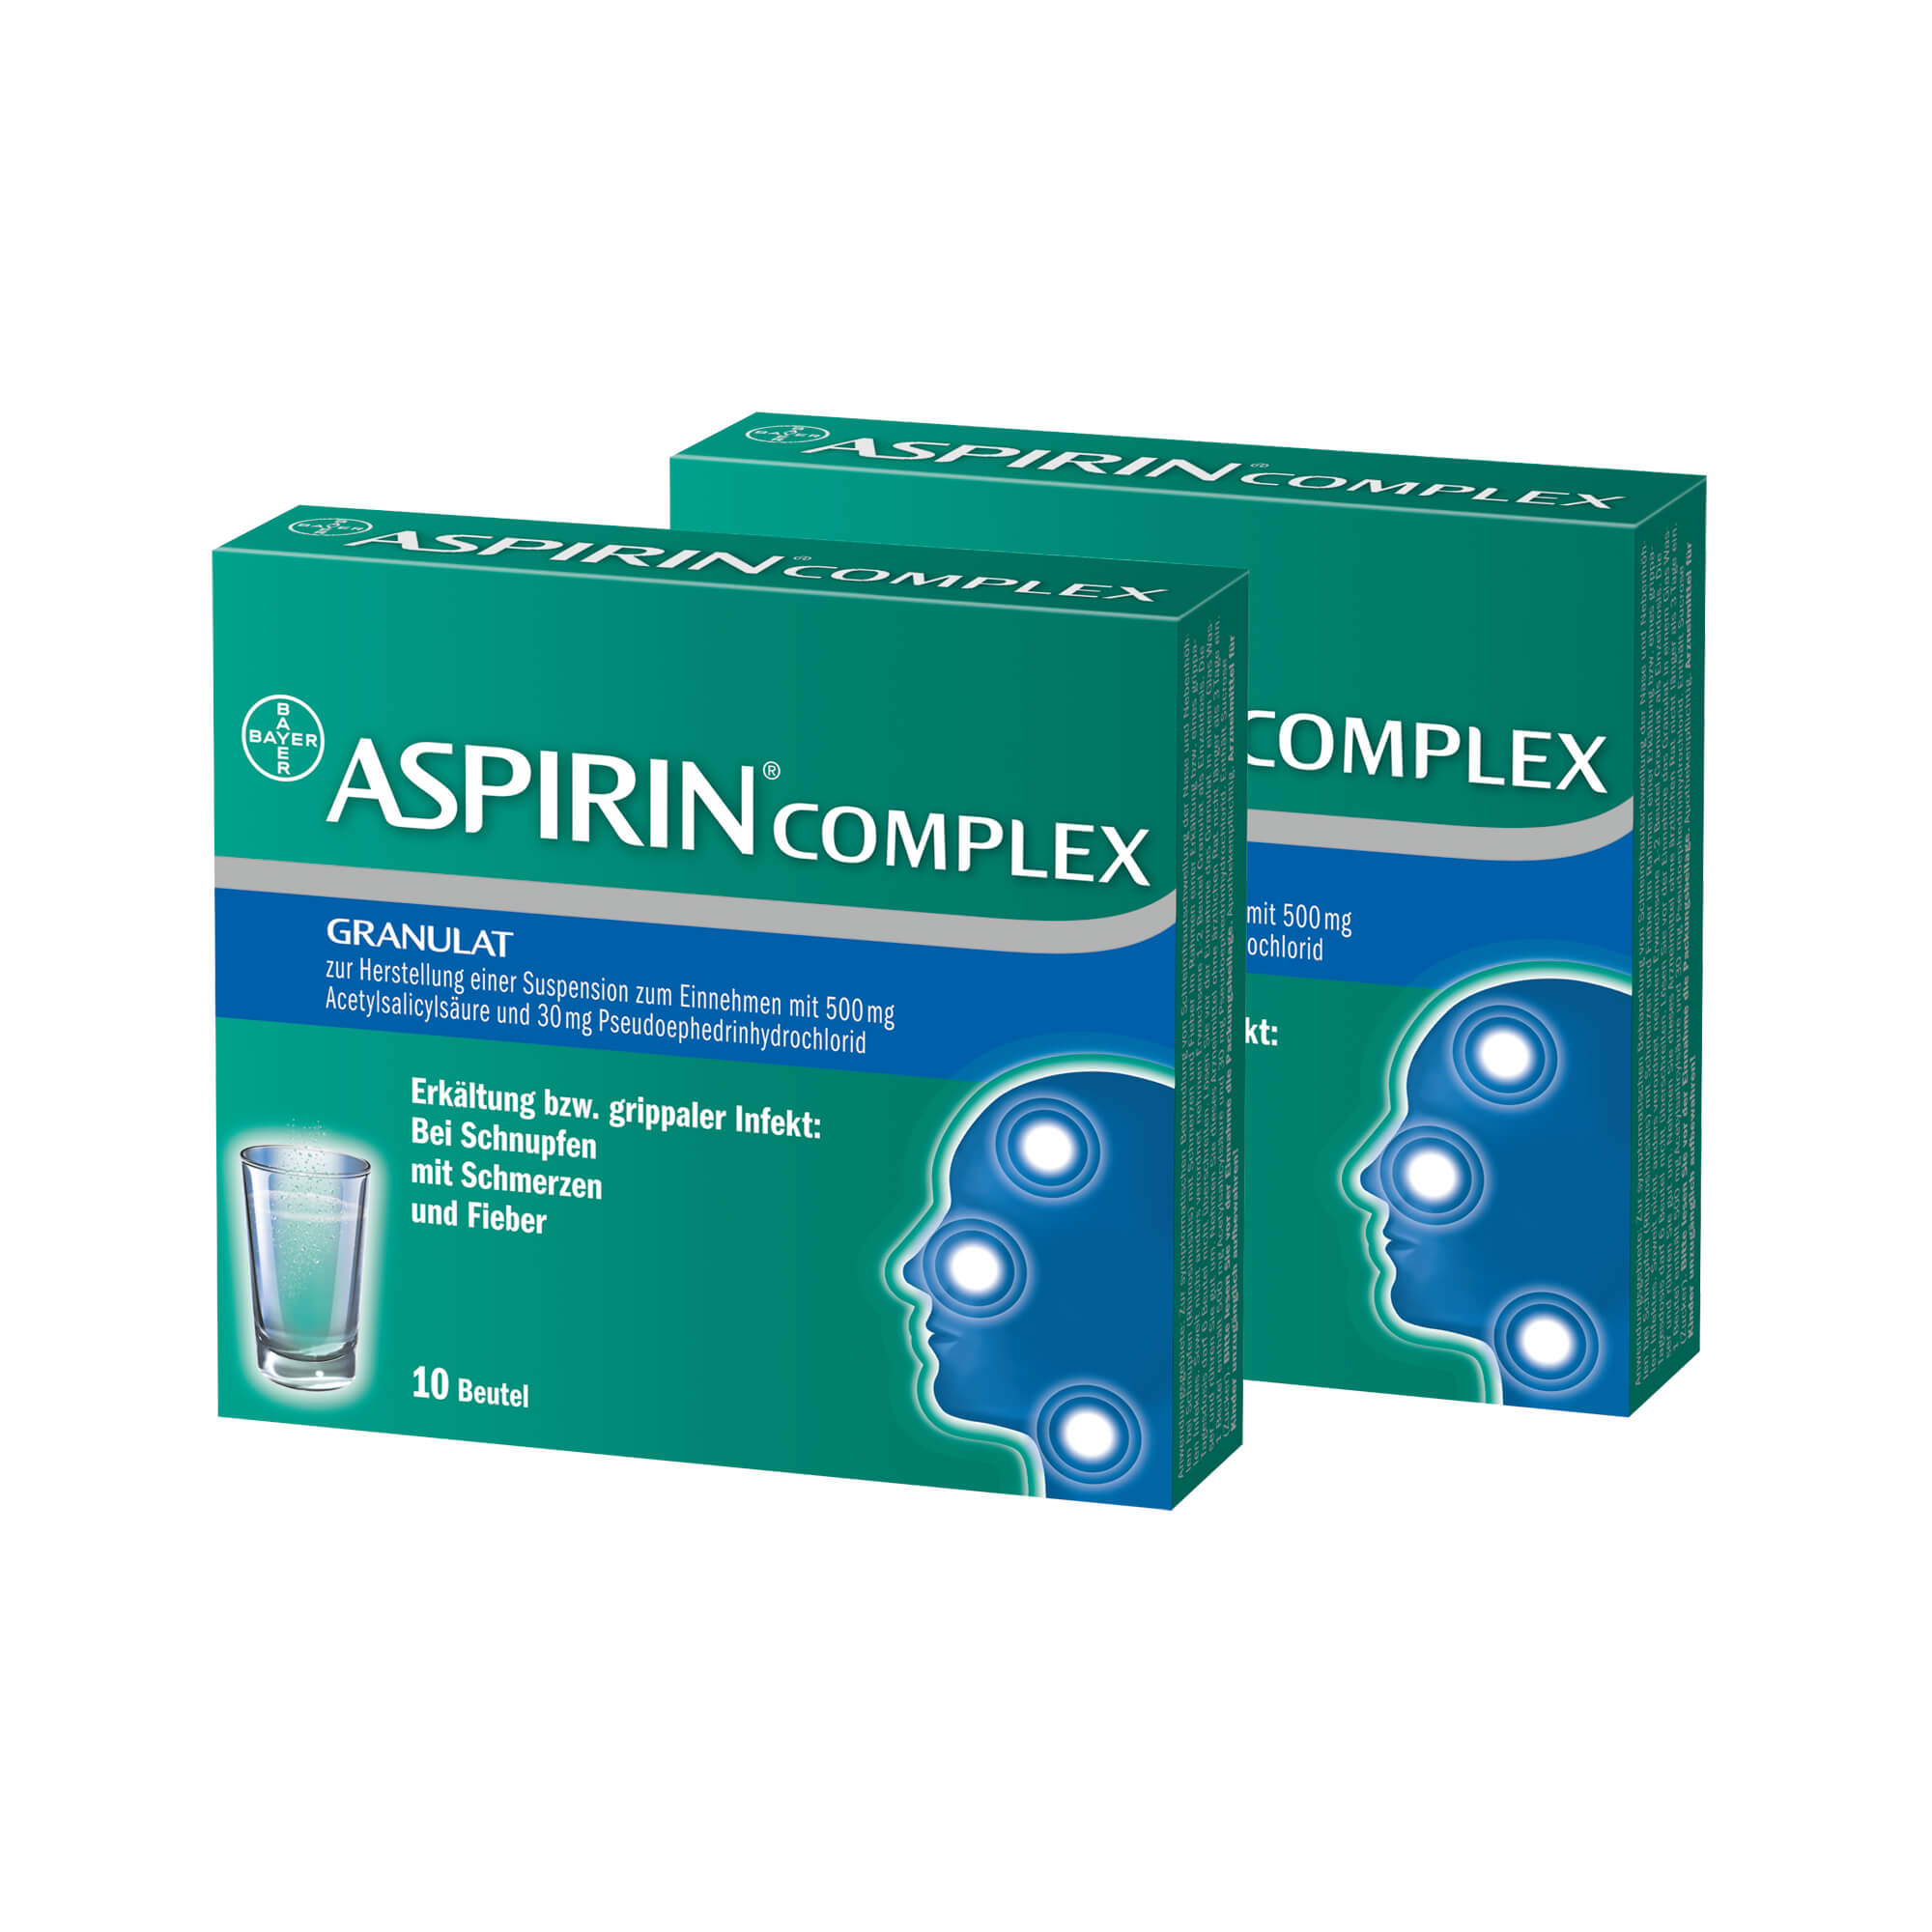 Mit Aspirin® Complex gegen unangenehmen Erkältungsbeschwerden.